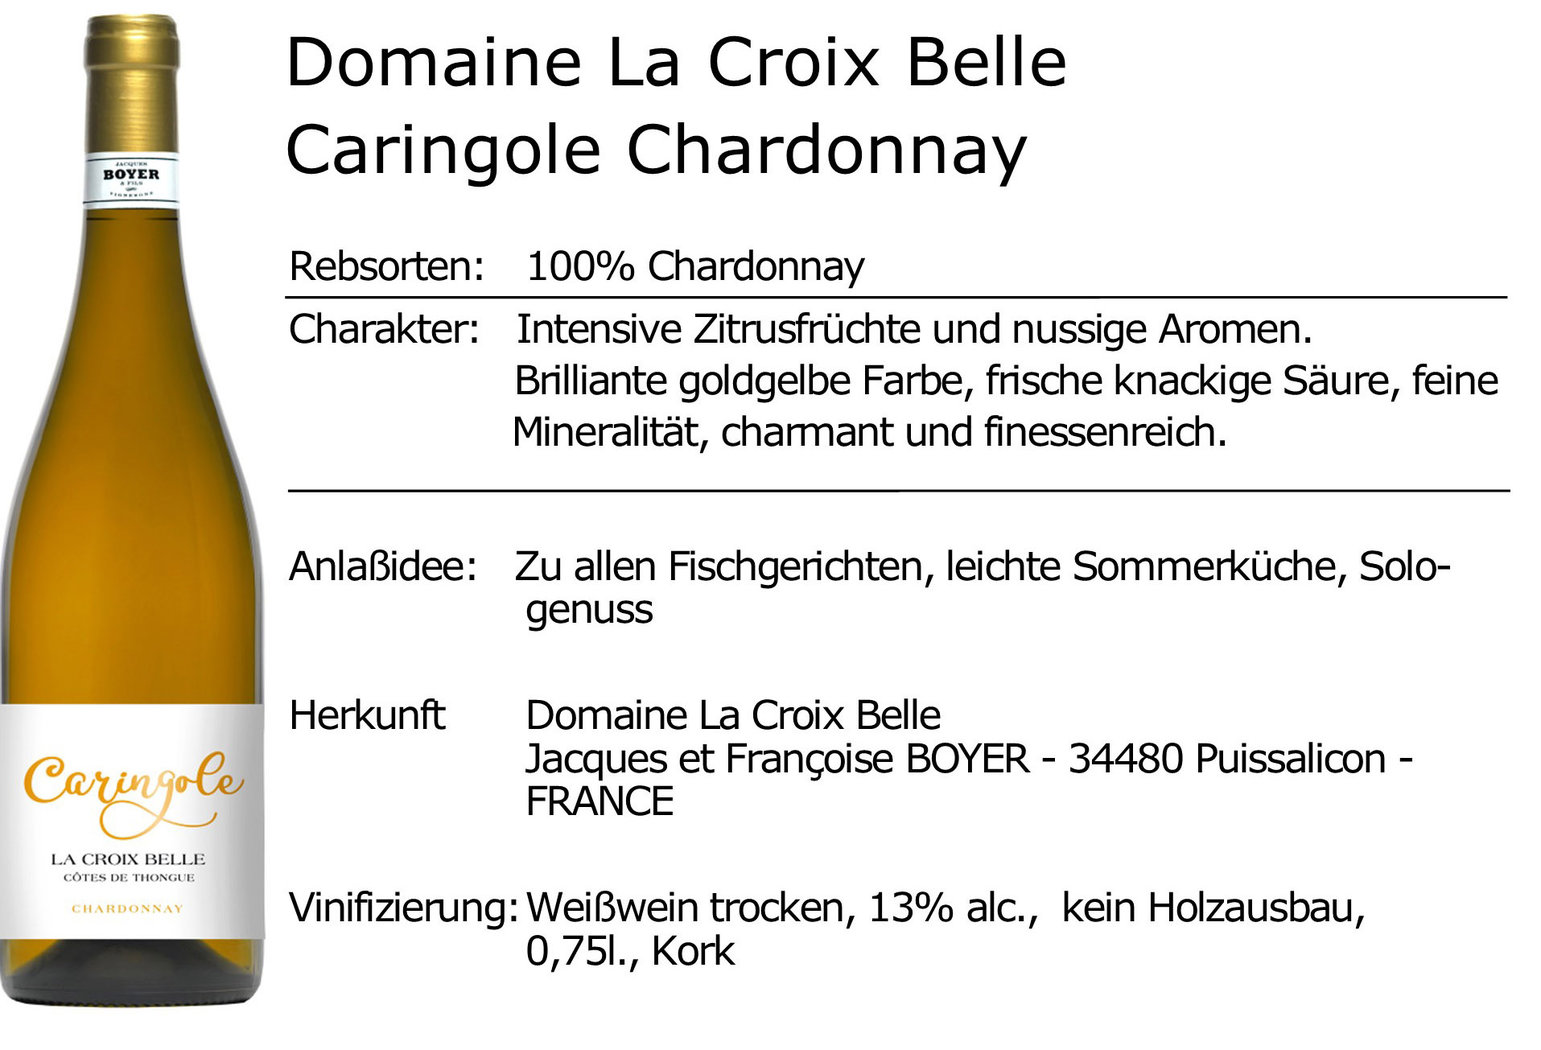 Domaine La Croix Belle Caringole Chardonnay 2021